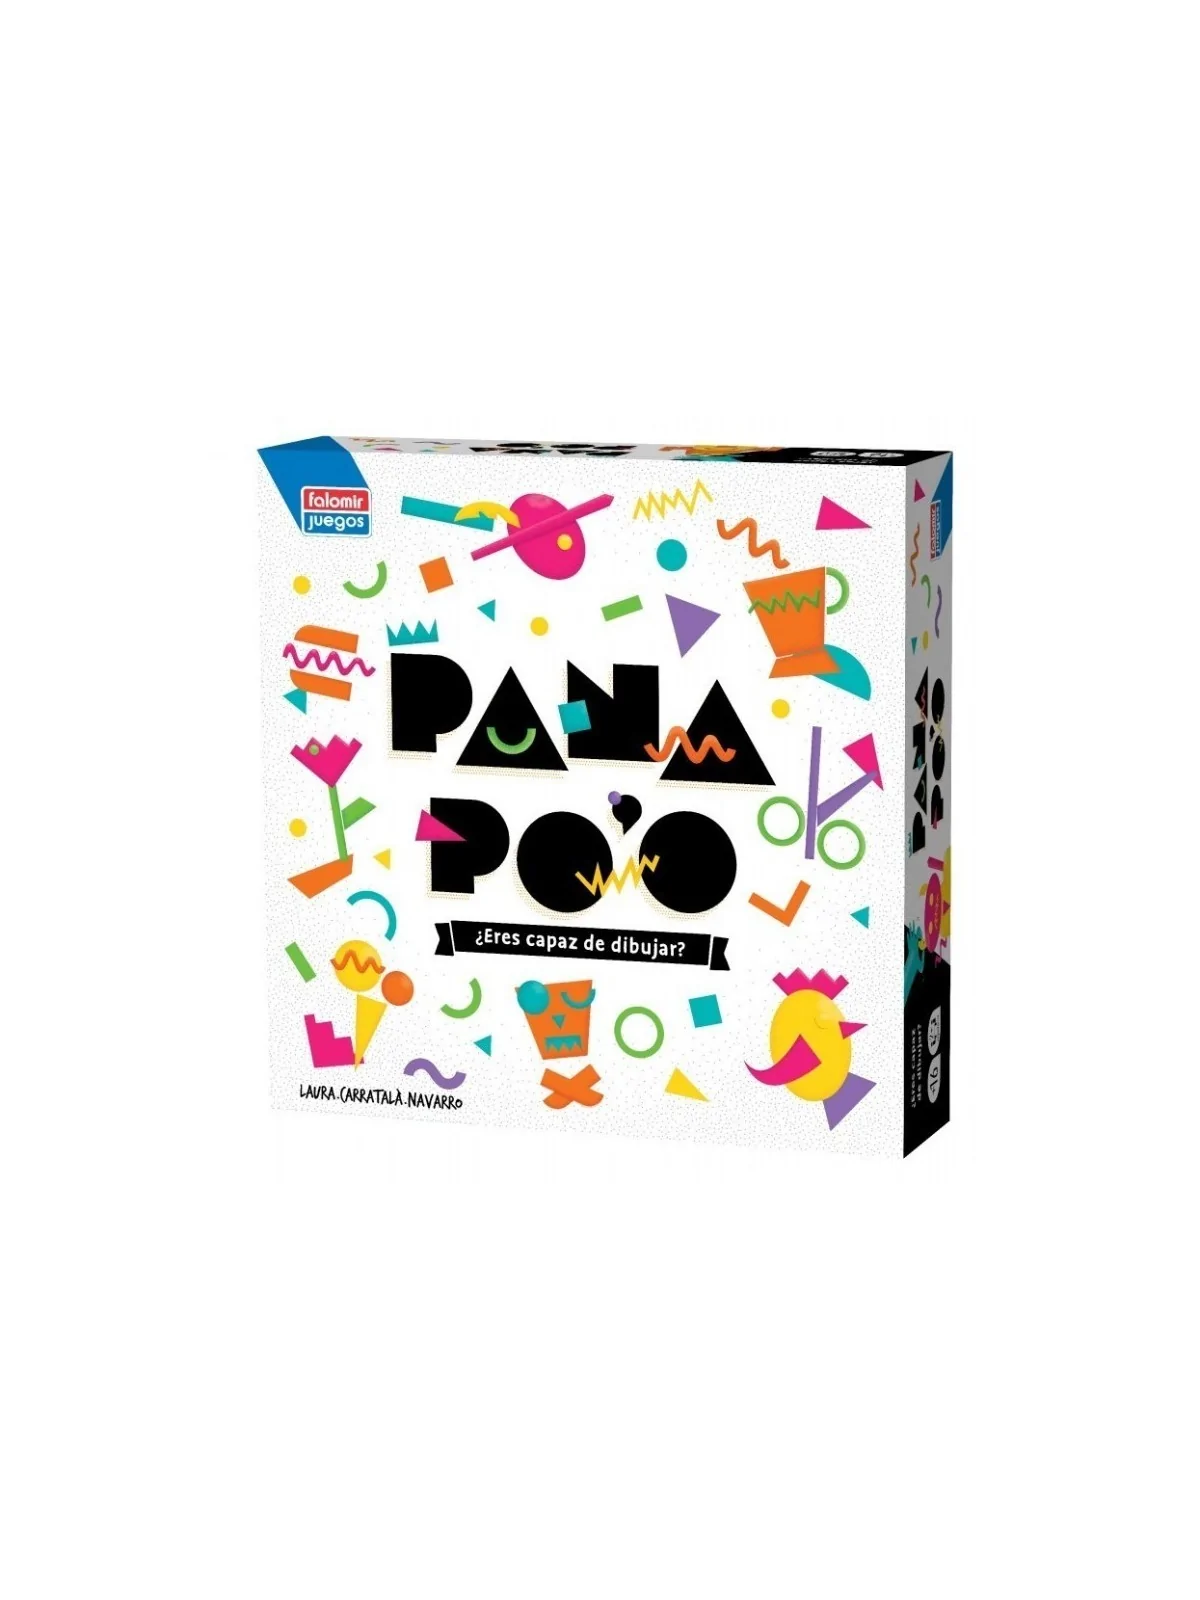 Comprar Pana Po'o barato al mejor precio 17,95 € de Falomir Juegos